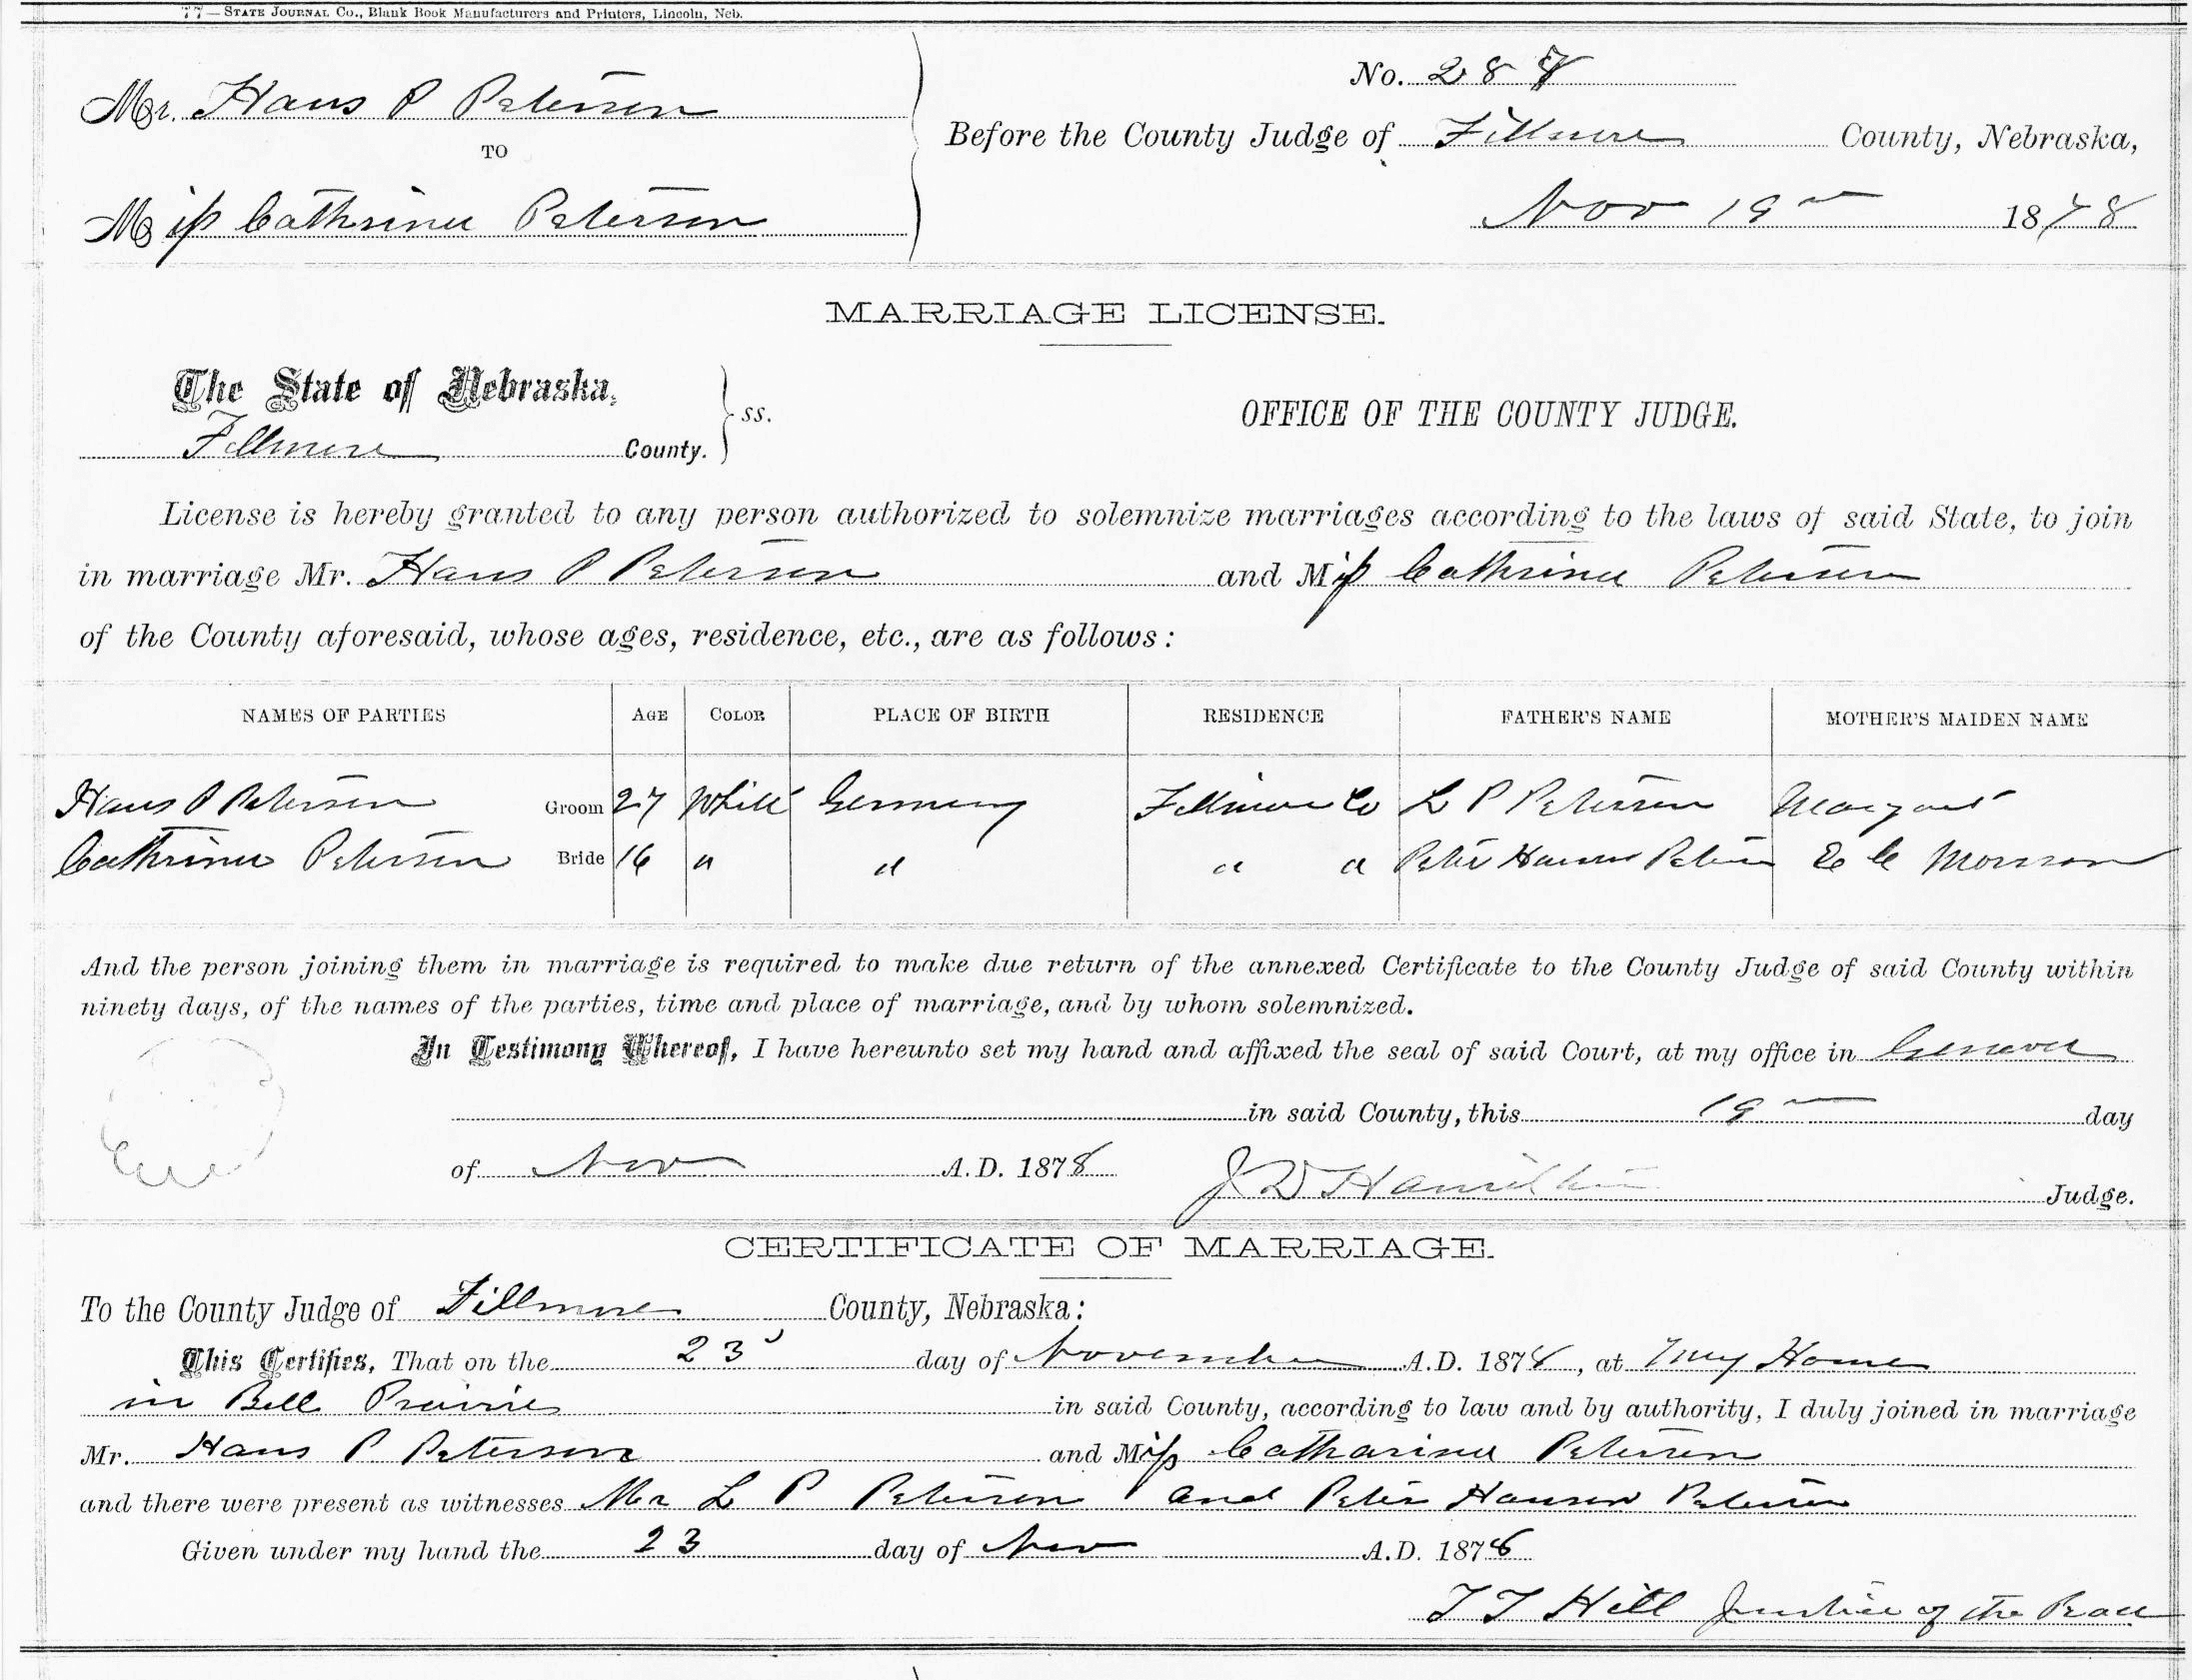 Petersen marriage certificate